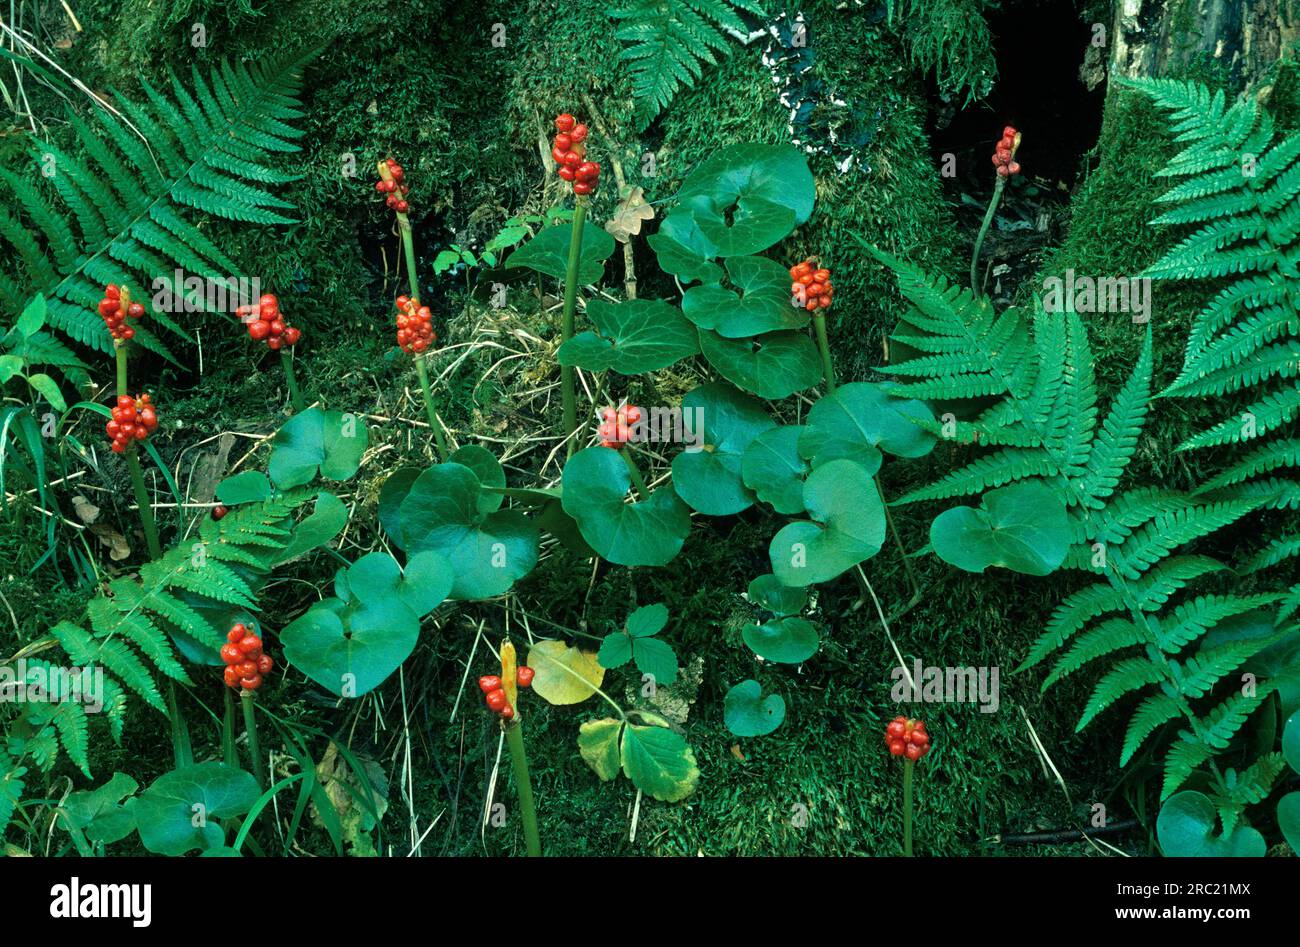 Arum (Arum maculatum), fruiting stem Arum Stock Photo